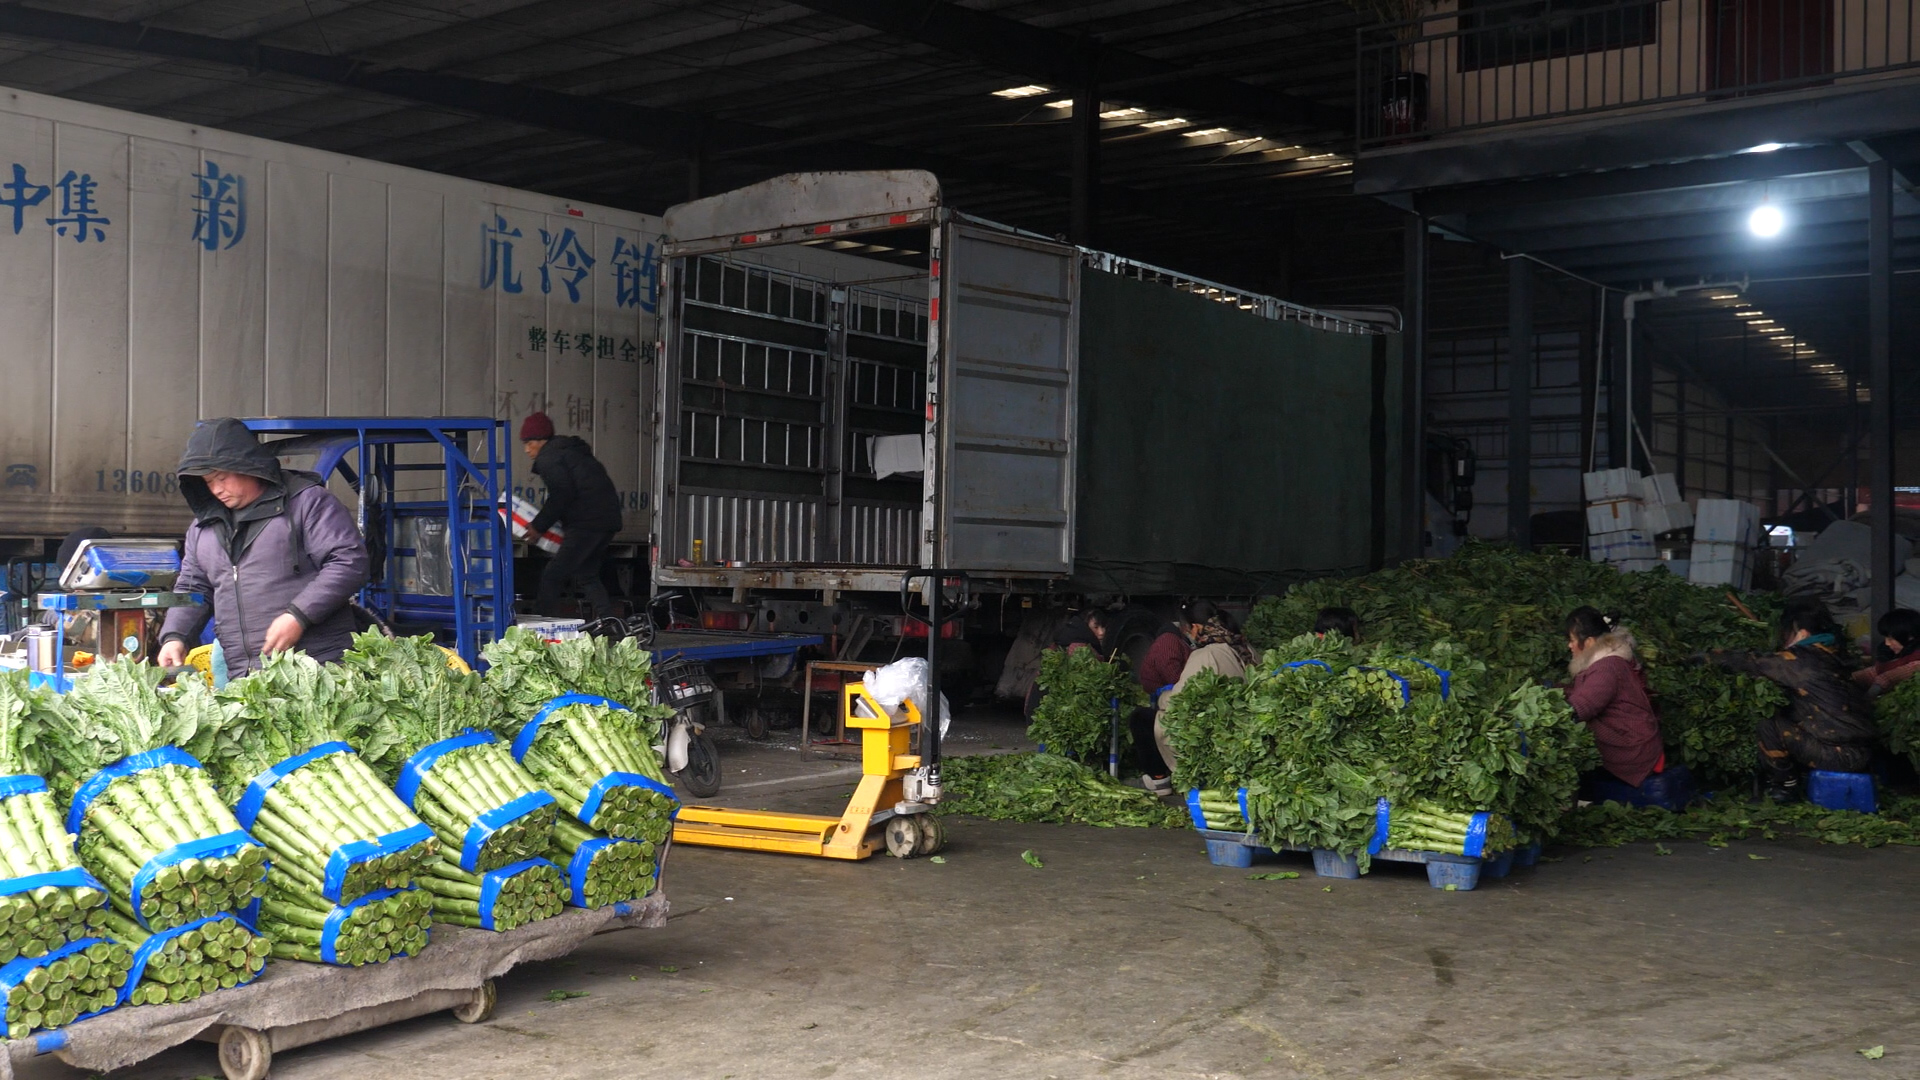 大象新闻发布：实探万邦丨有商户日销30吨蔬菜 外地商户开大货车批水果(图2)